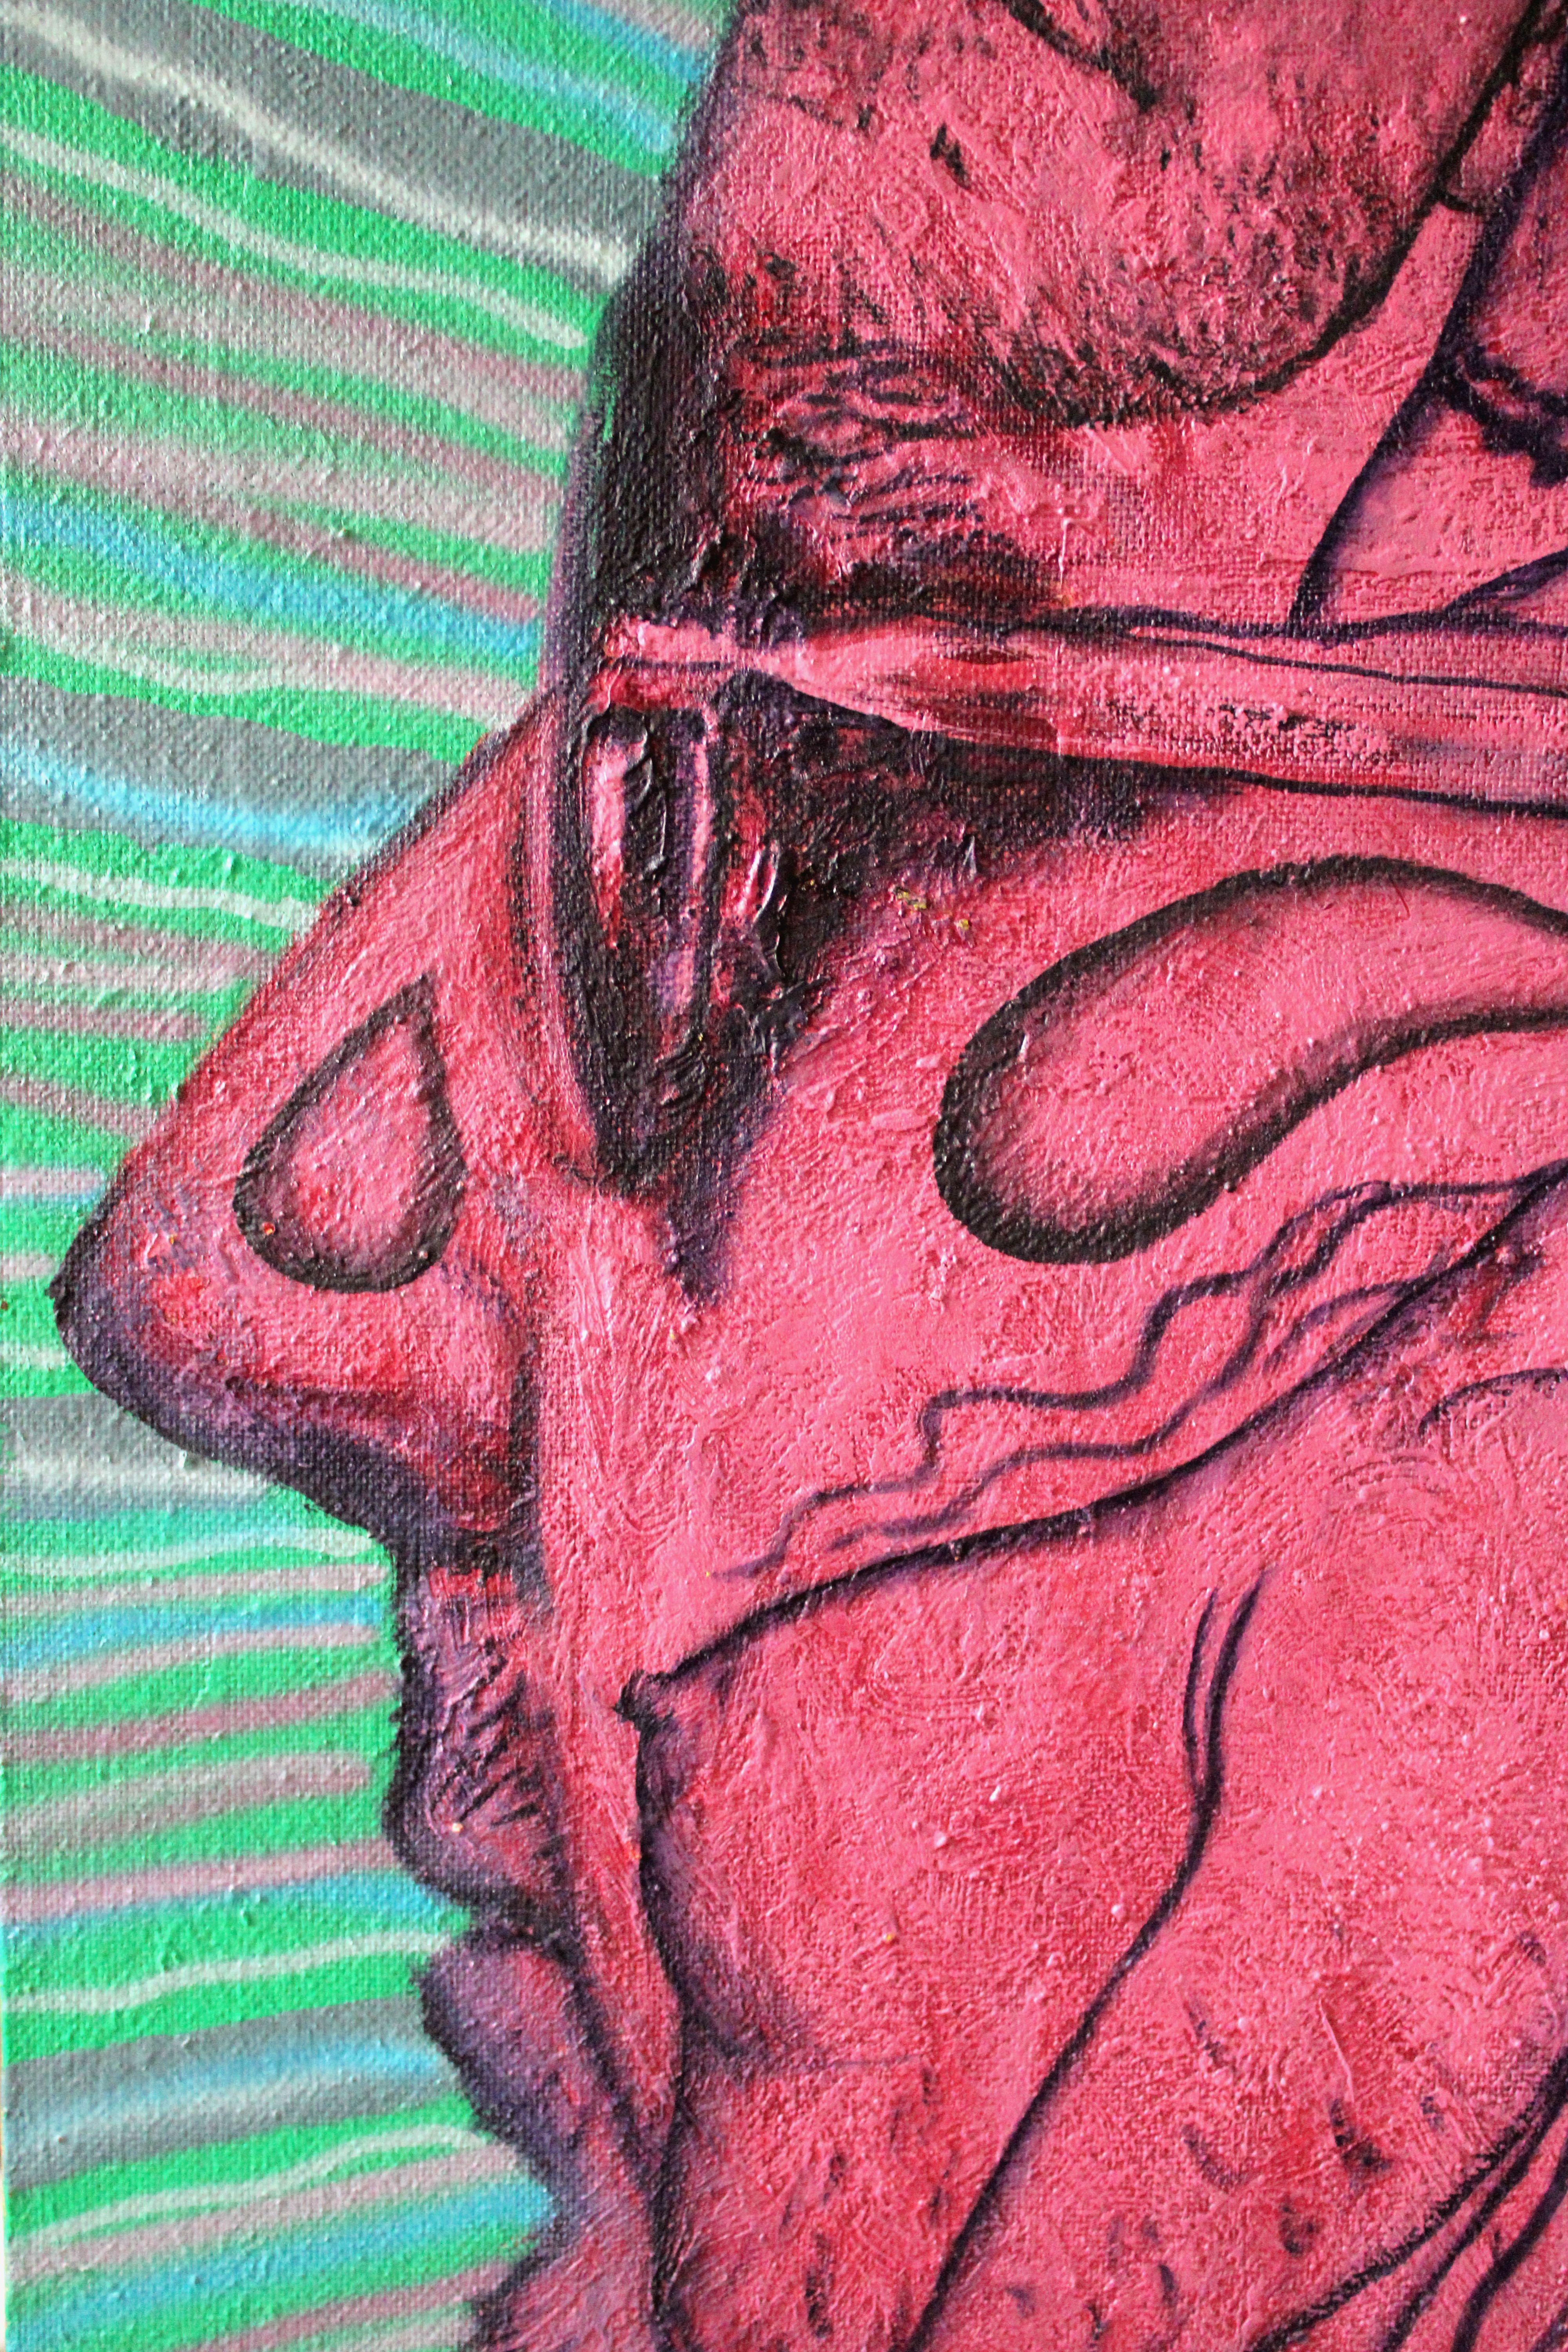 Tätowier mich 2  2002, Karton, Mischtechnik, 153x117 cm (Violett), Nude Painting, von Juris Utans